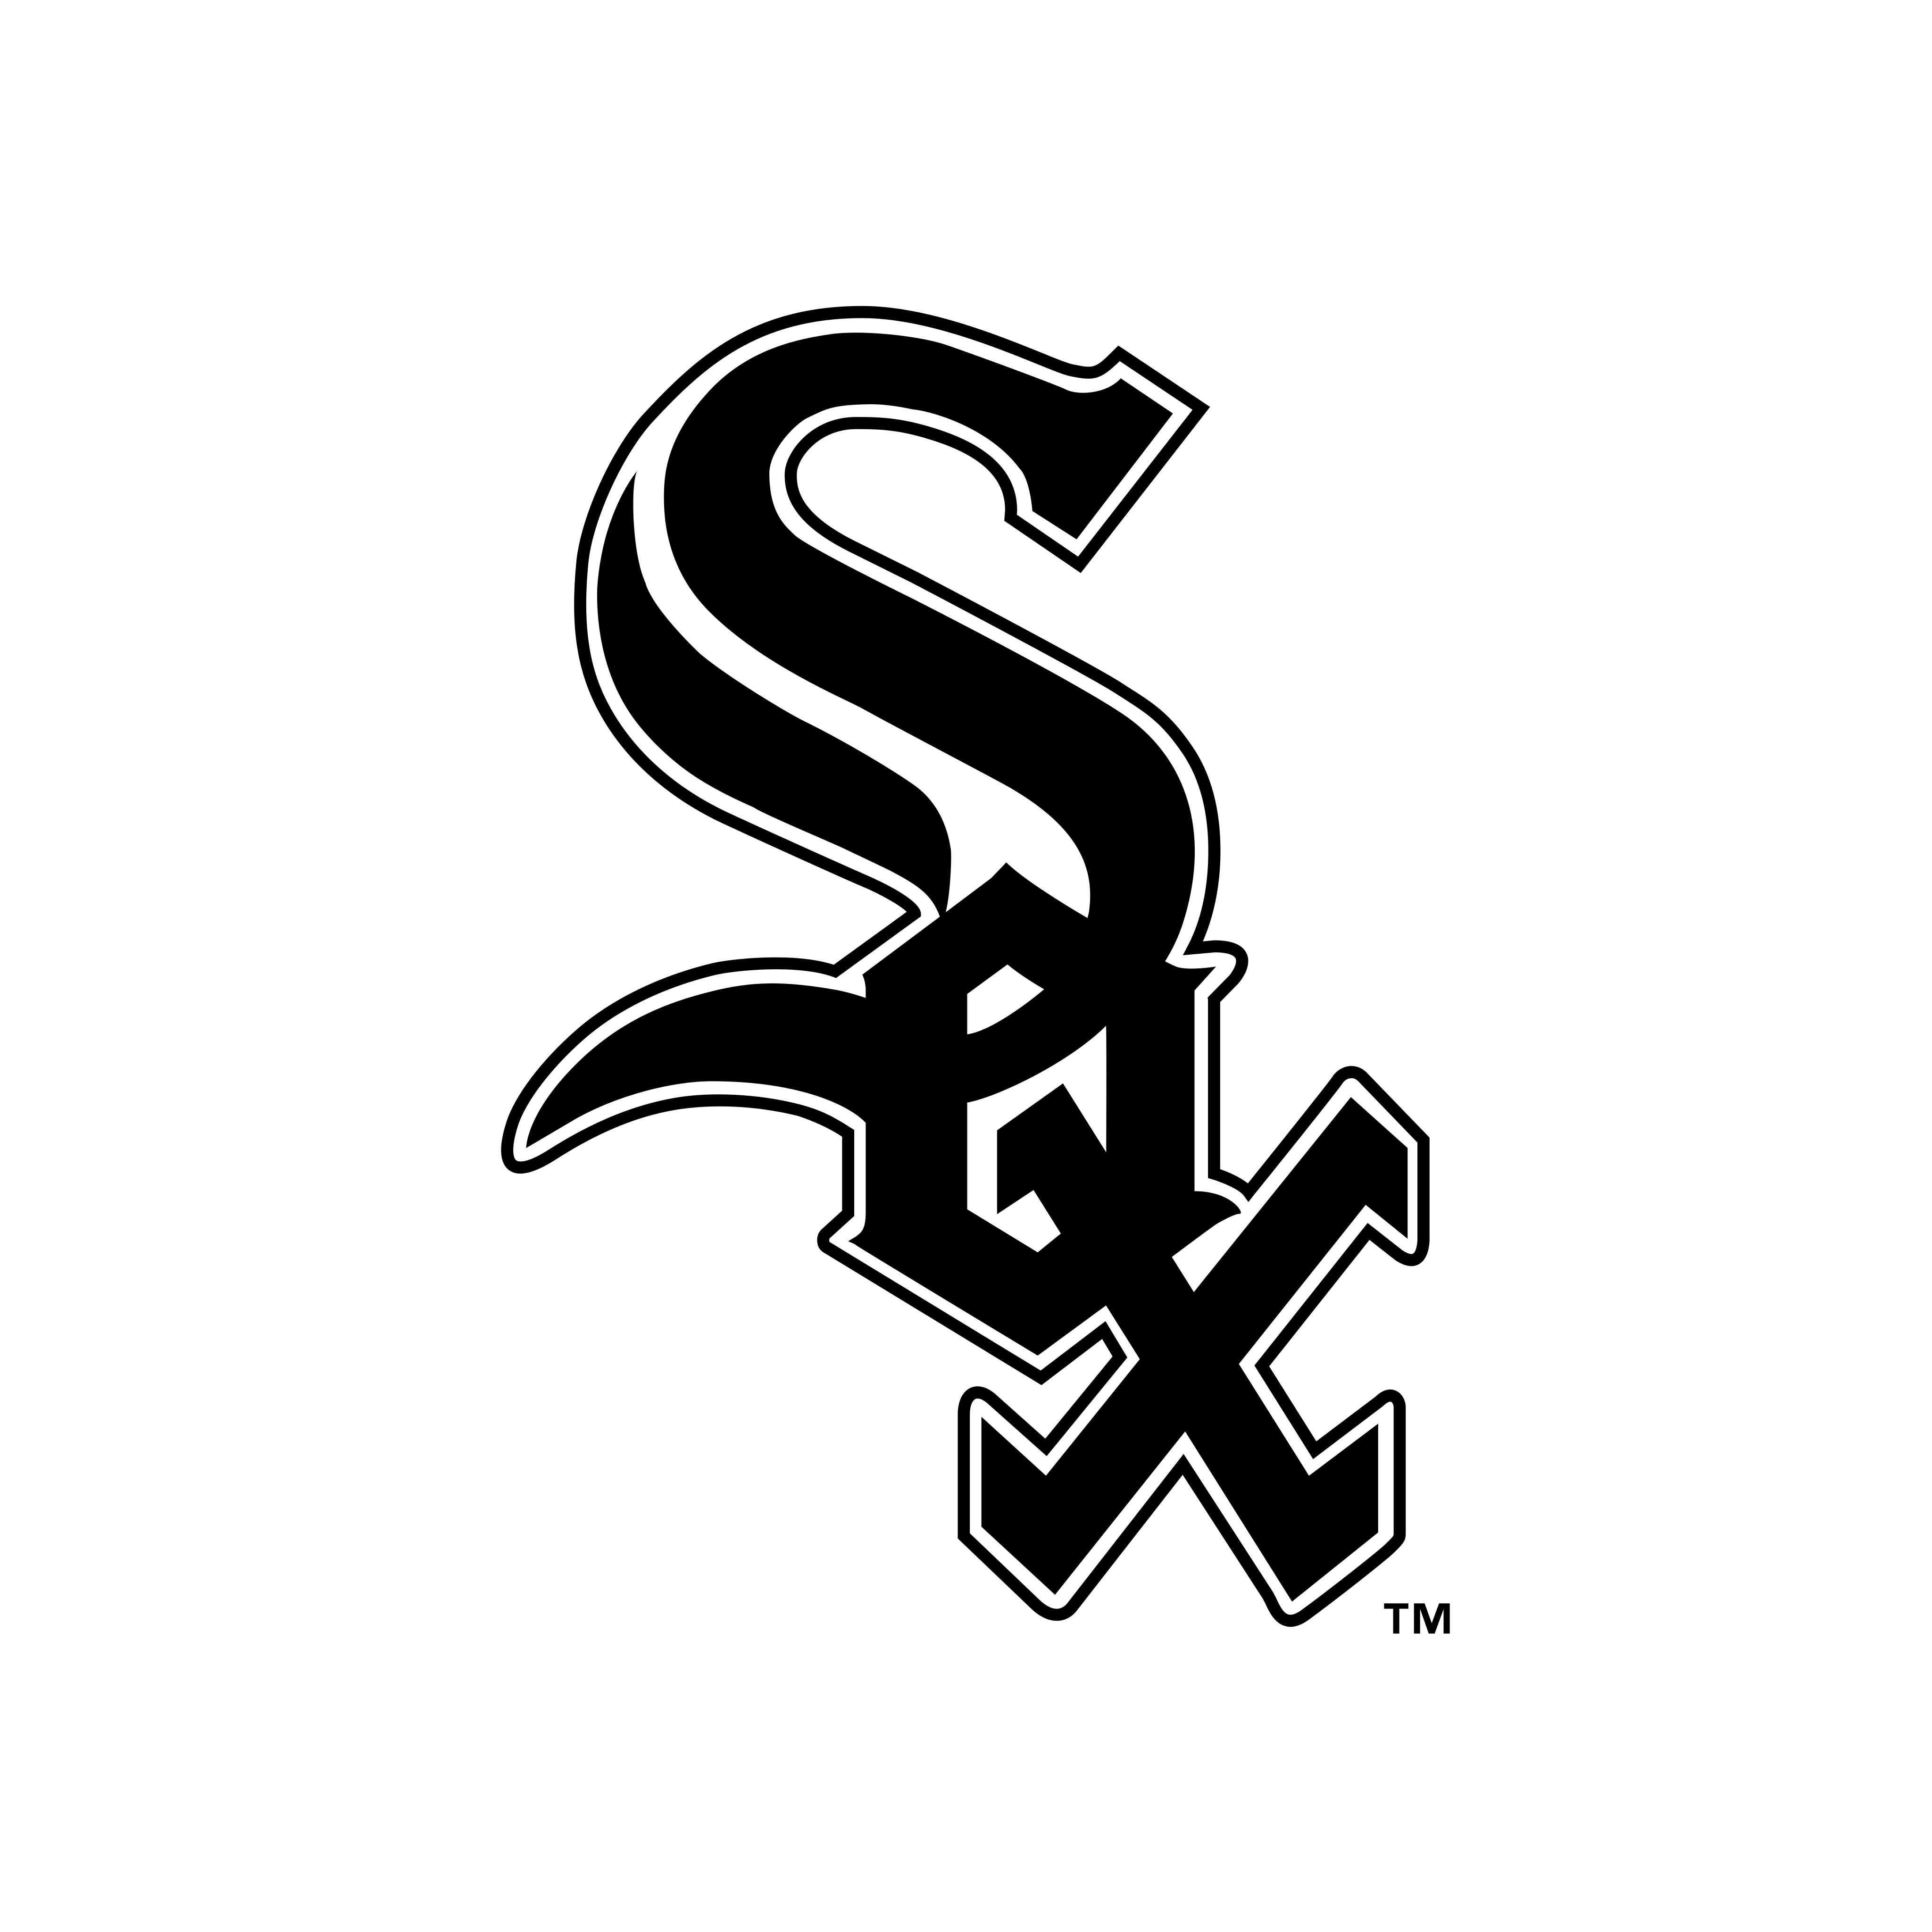 chicago white sox logo 0 - Chicago White Sox Logo